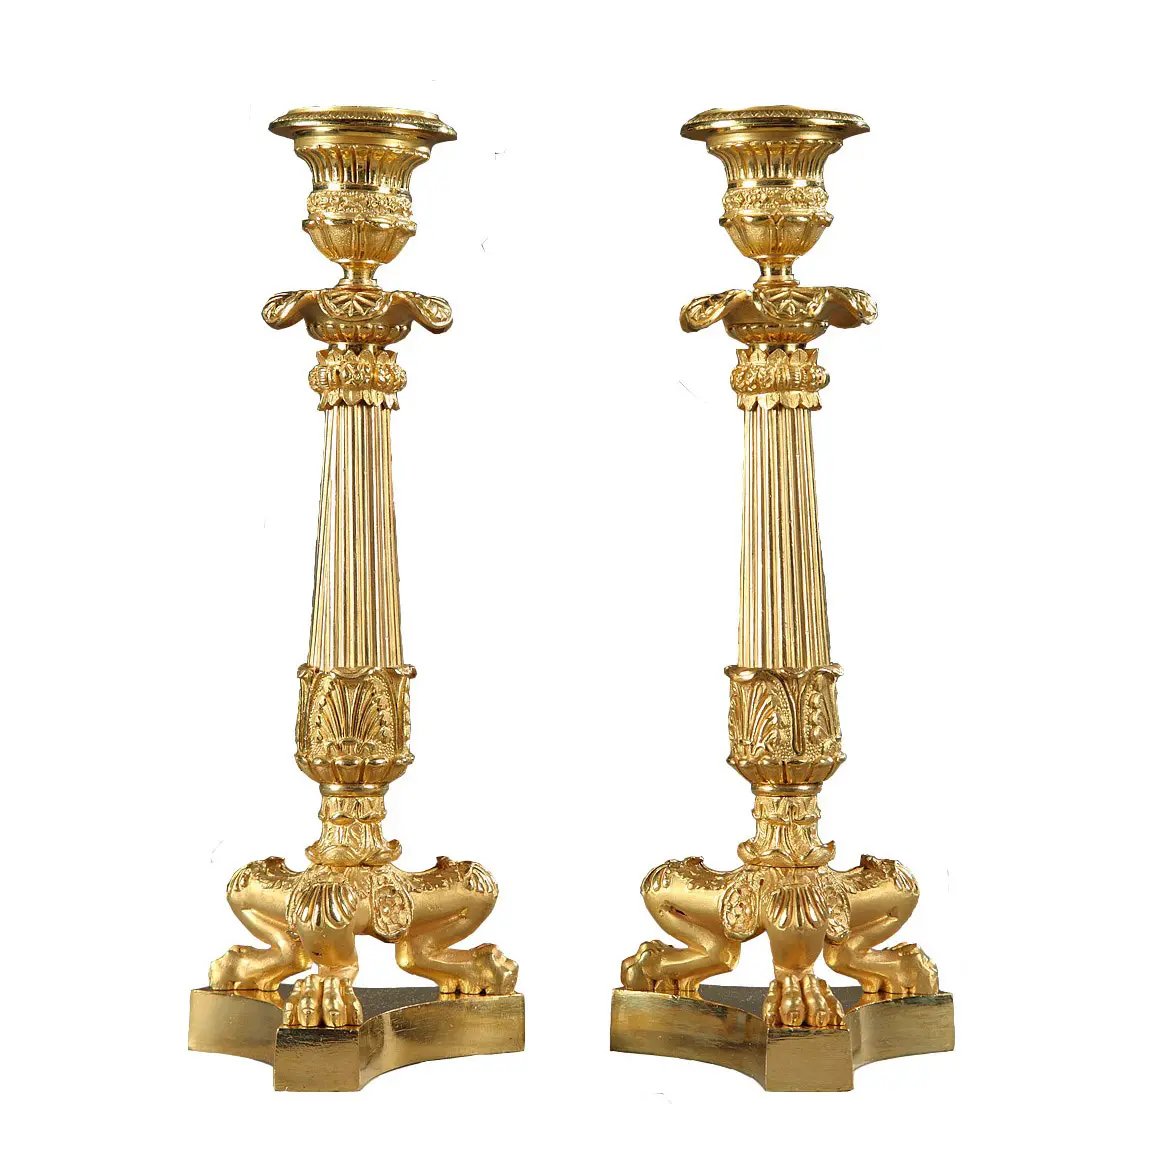 Suporte de vela para decoração de festas de casamento, suporte decorativo feito à mão banhado a ouro com melhor qualidade